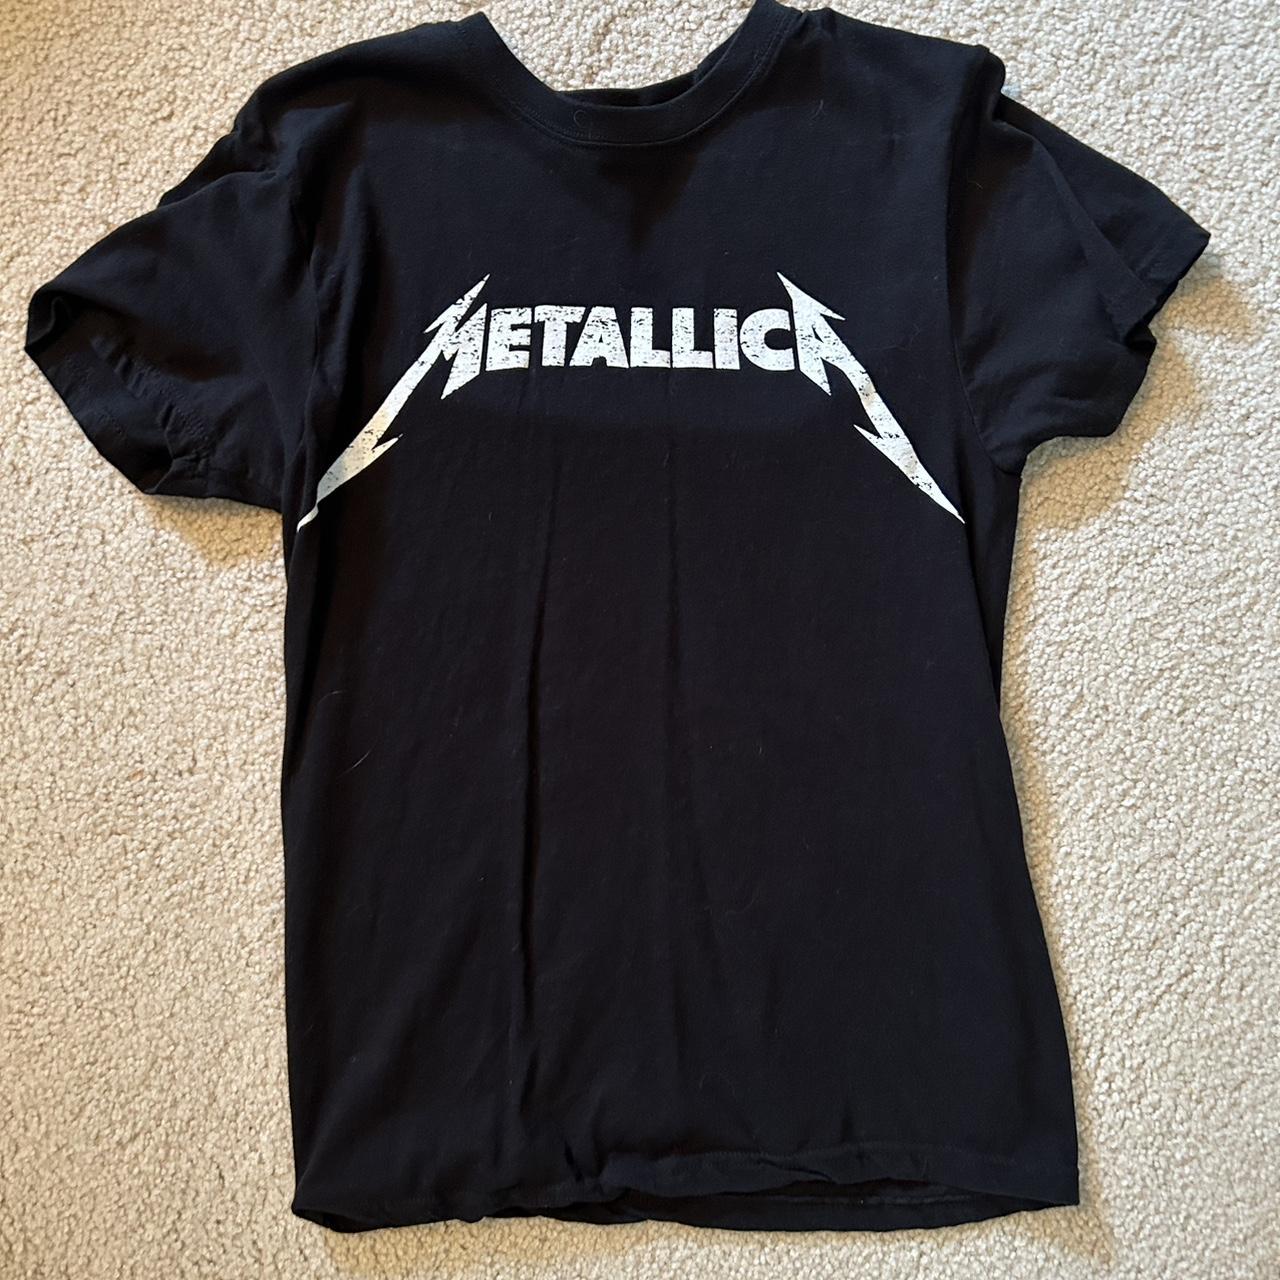 Women's fit small Metallica band t shirt. #metallia... - Depop